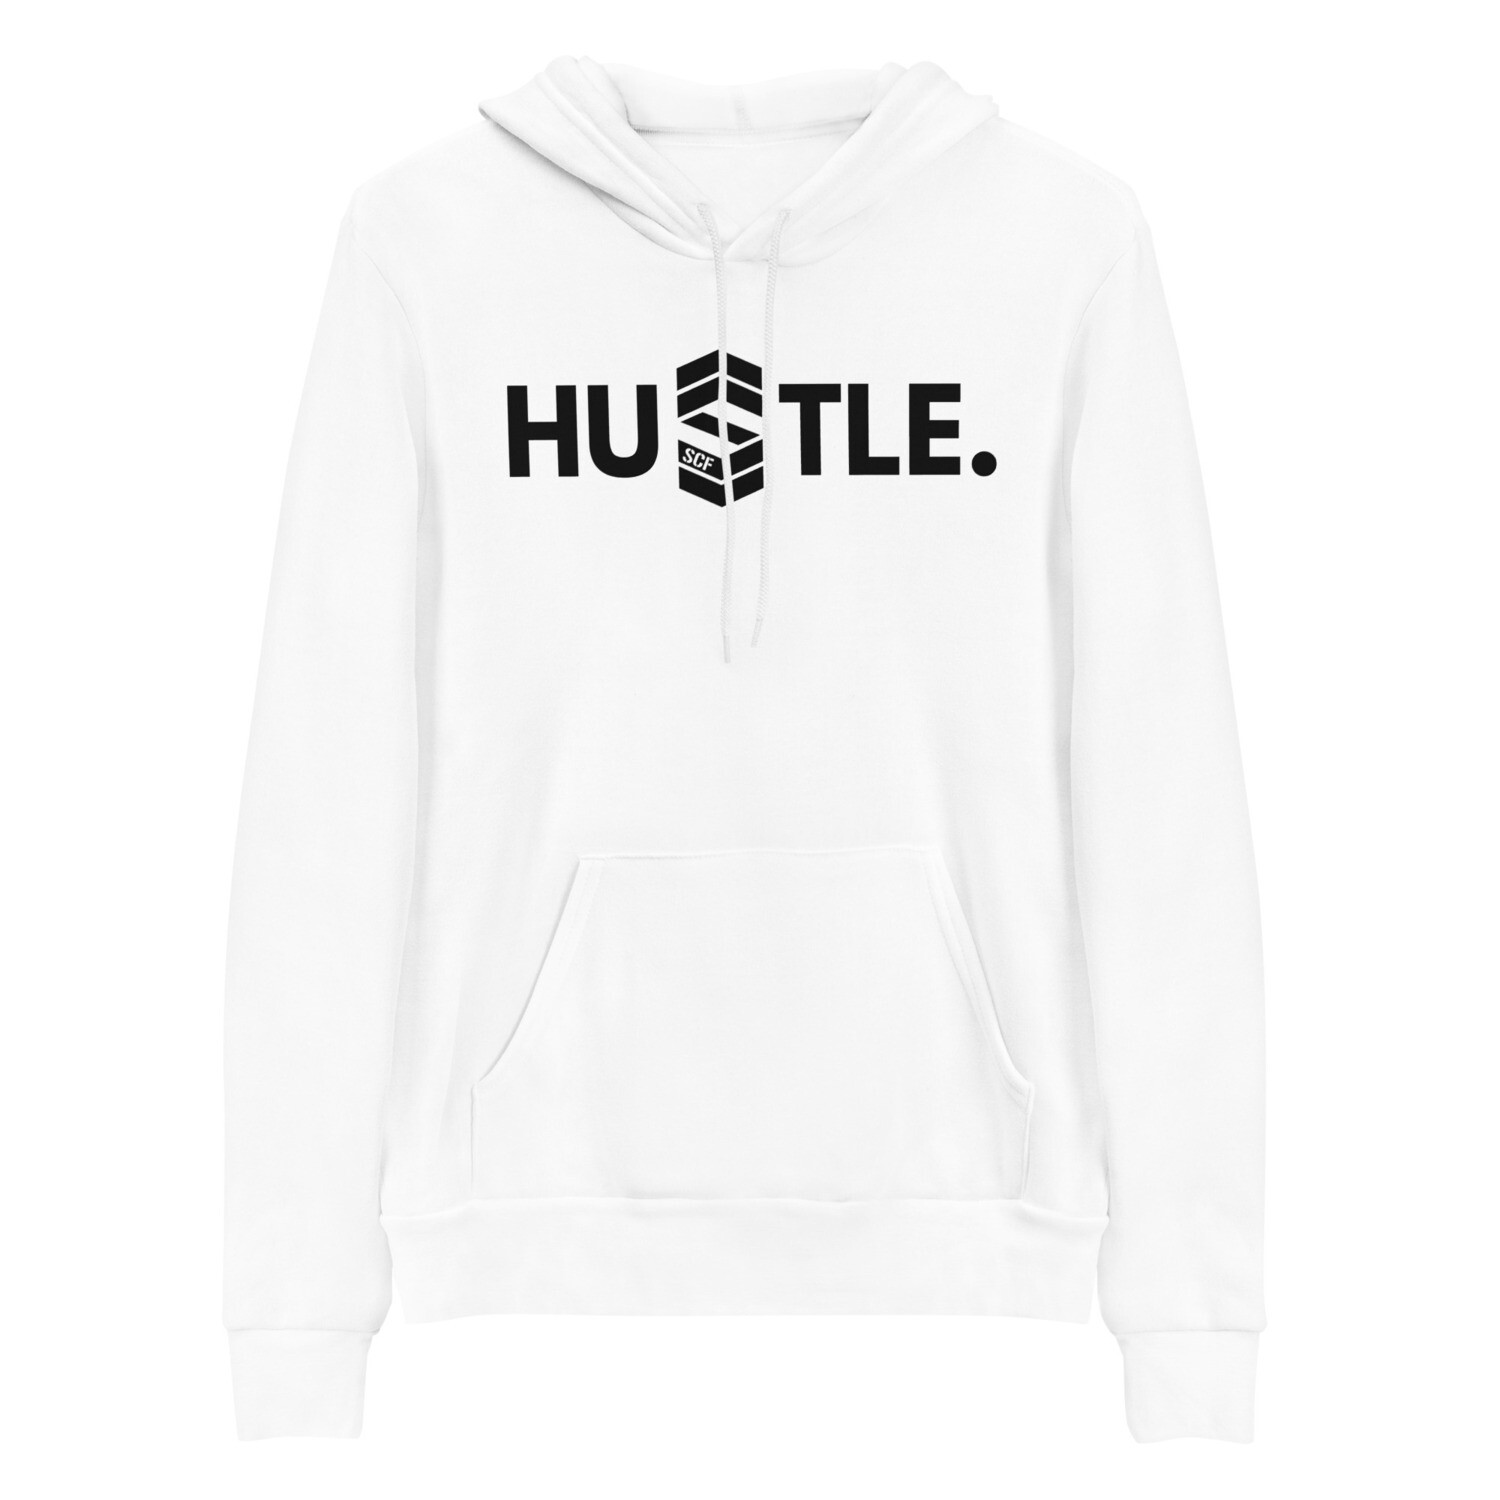 Hustle Pullover hoodie